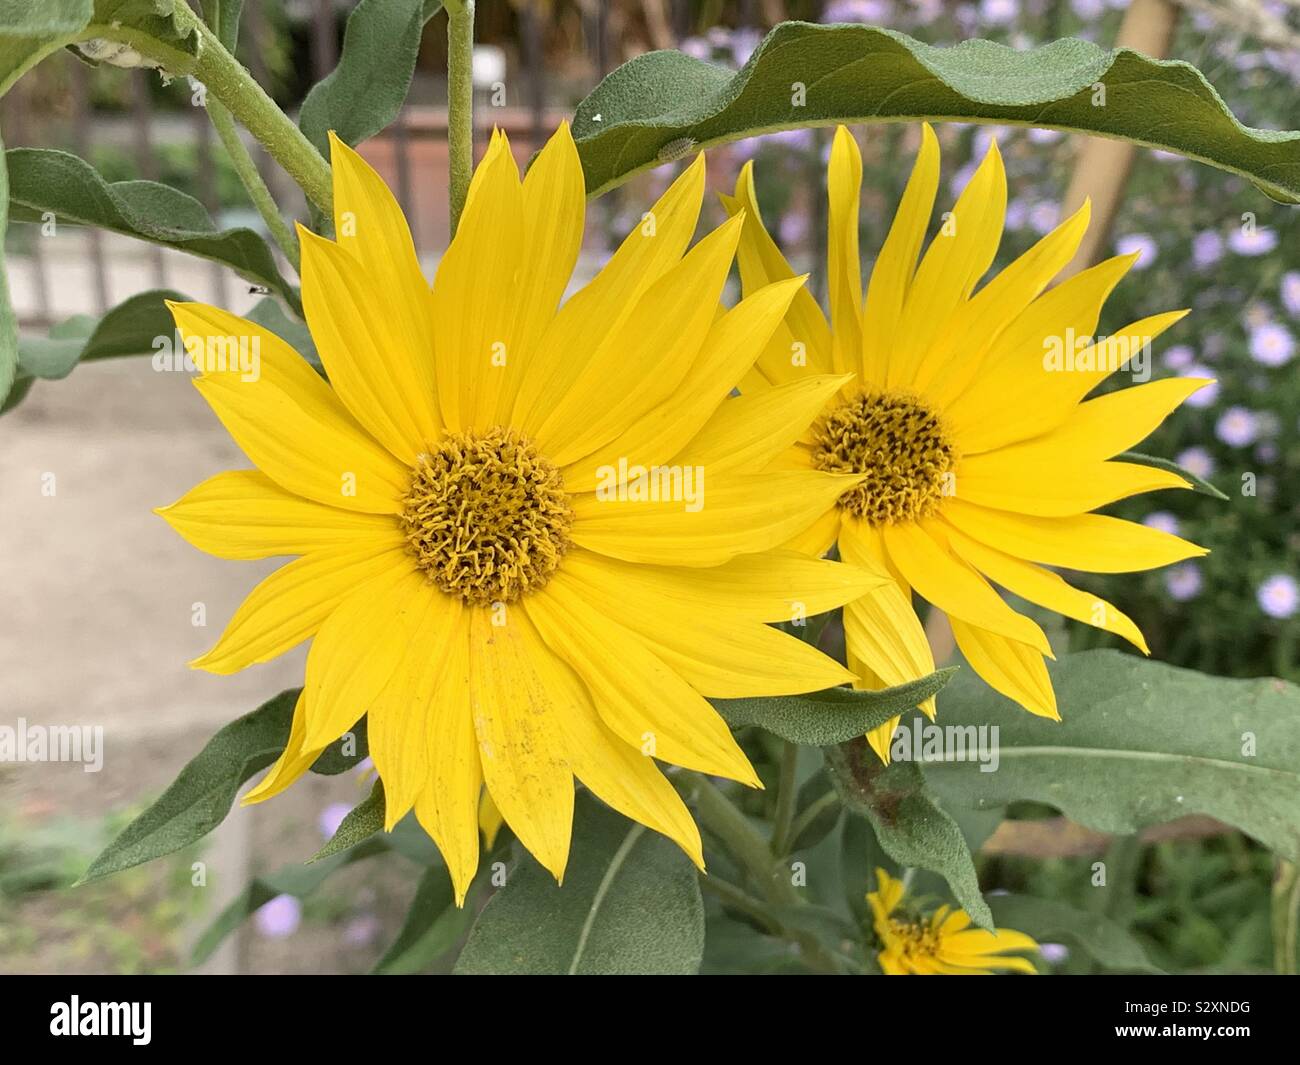 Helianthus flowers Stock Photo